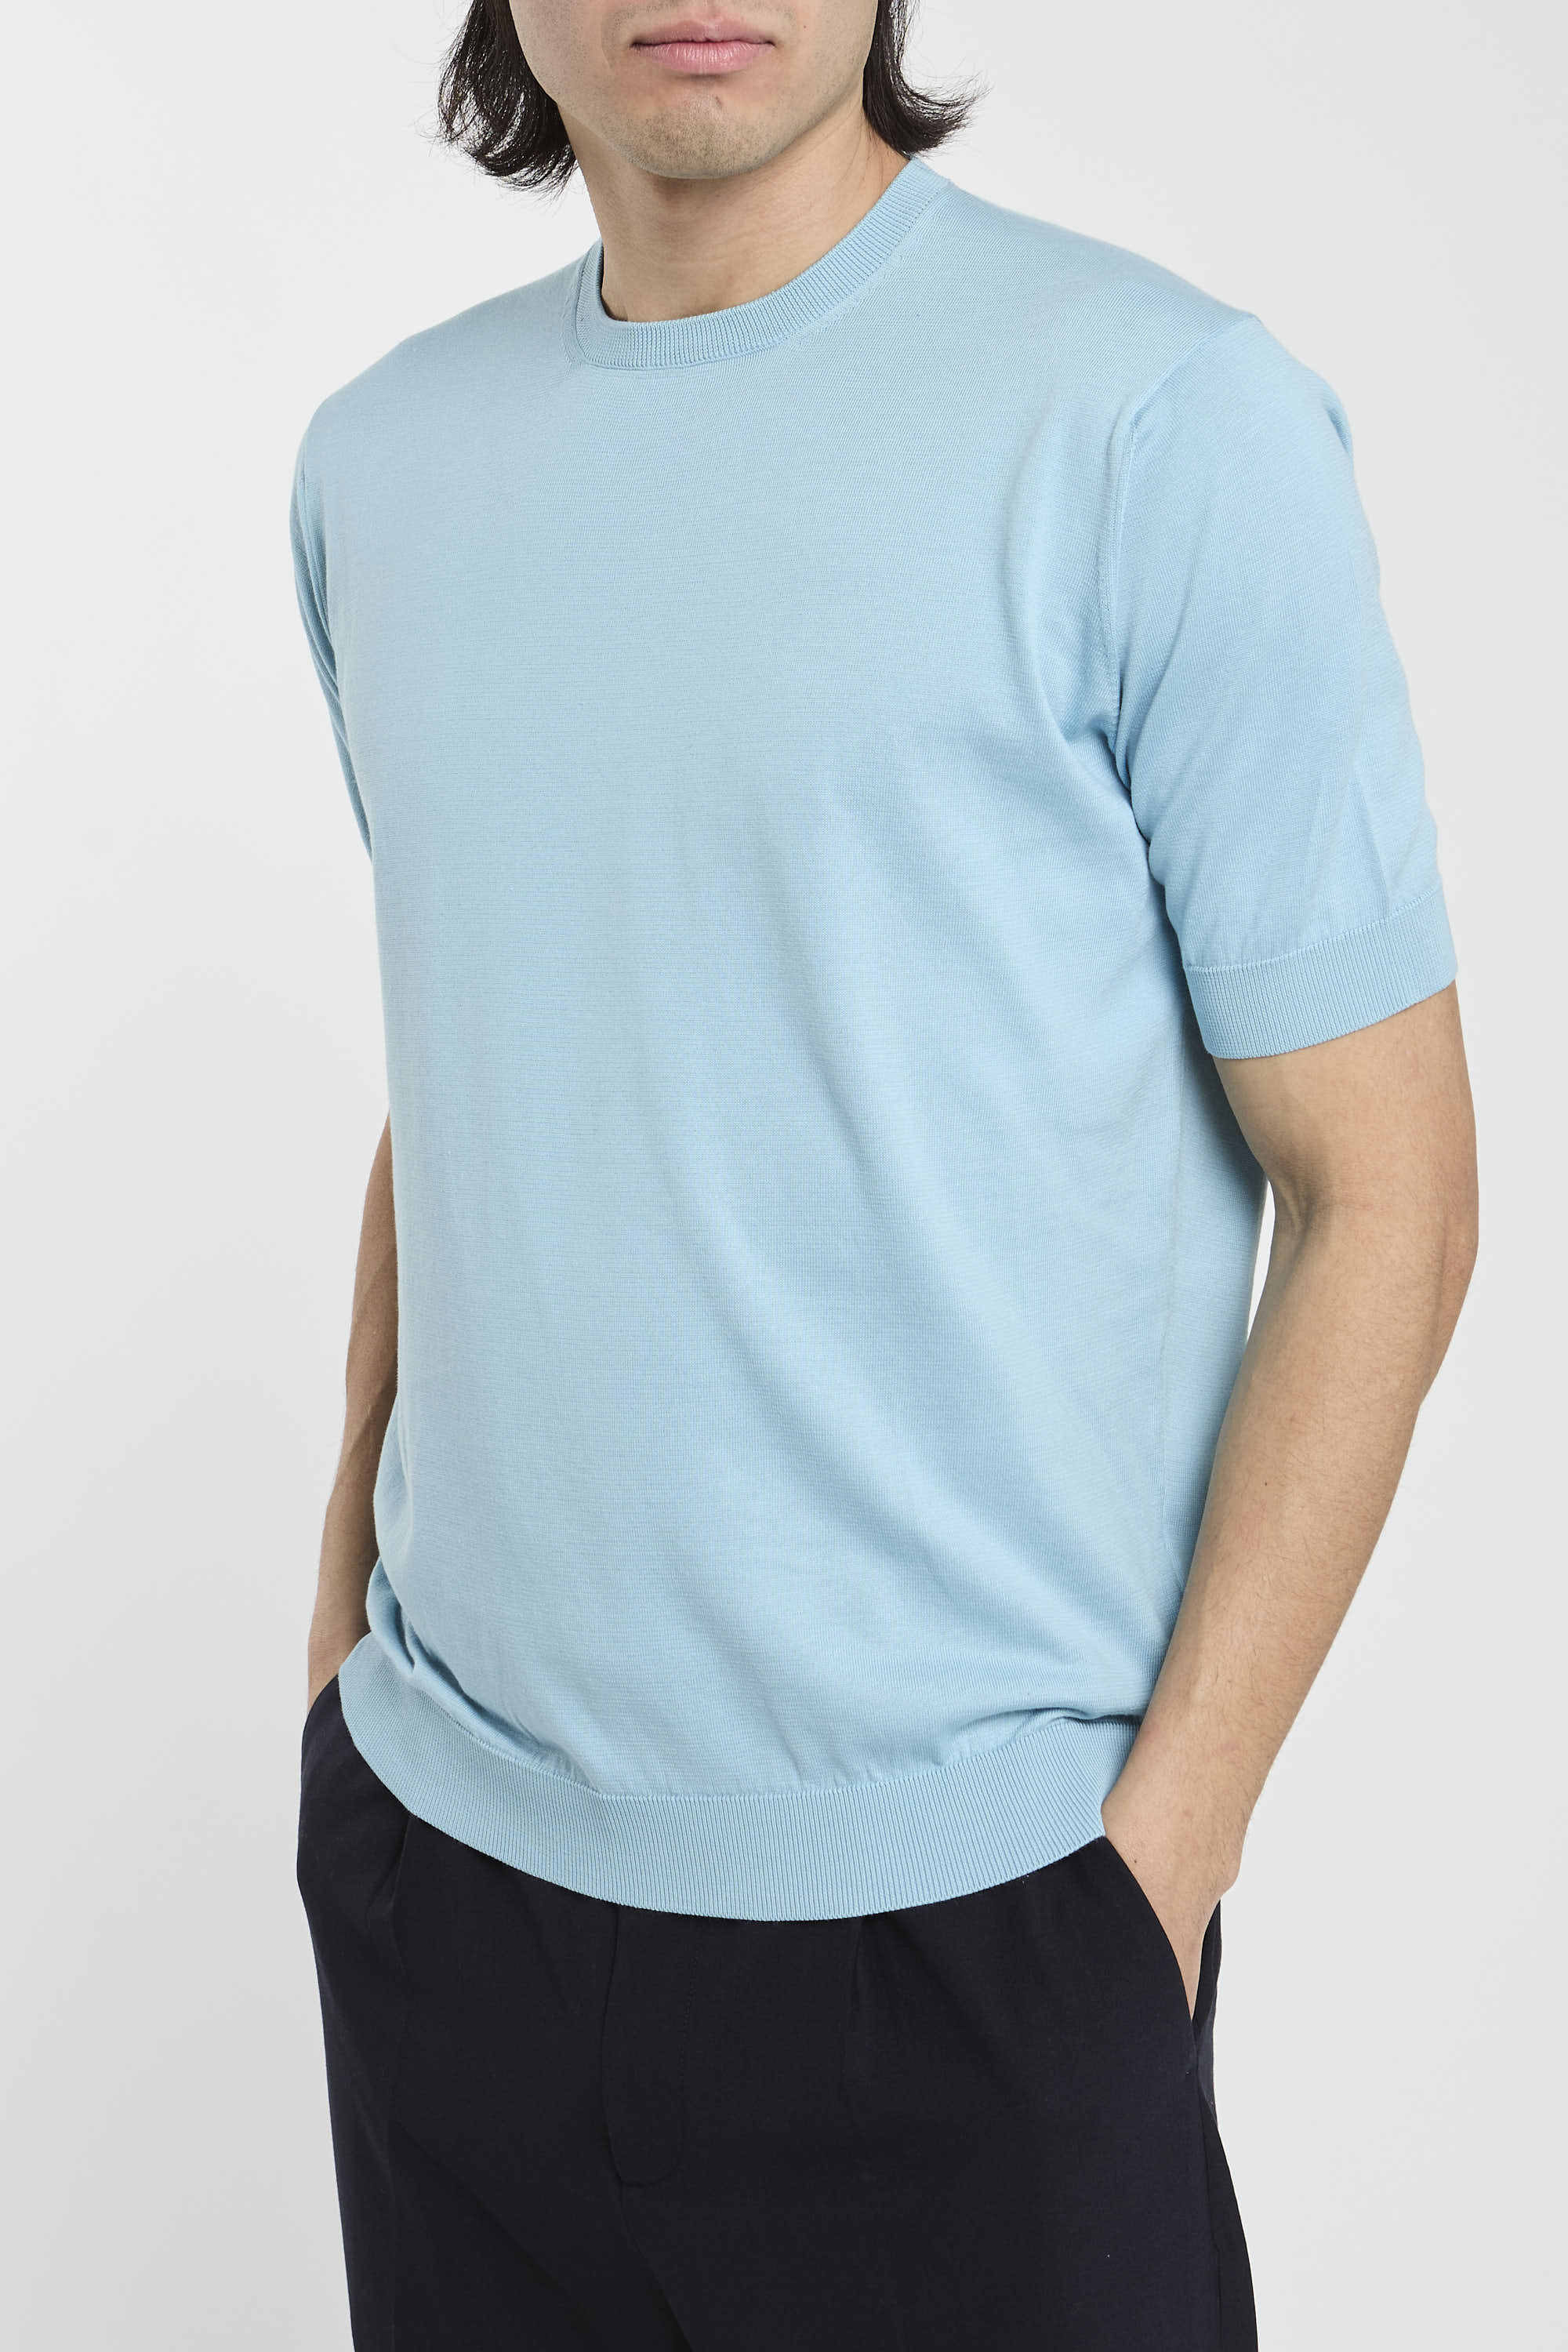 Filippo De Laurentiis T-Shirt 7091 Cotton Turquoise-3